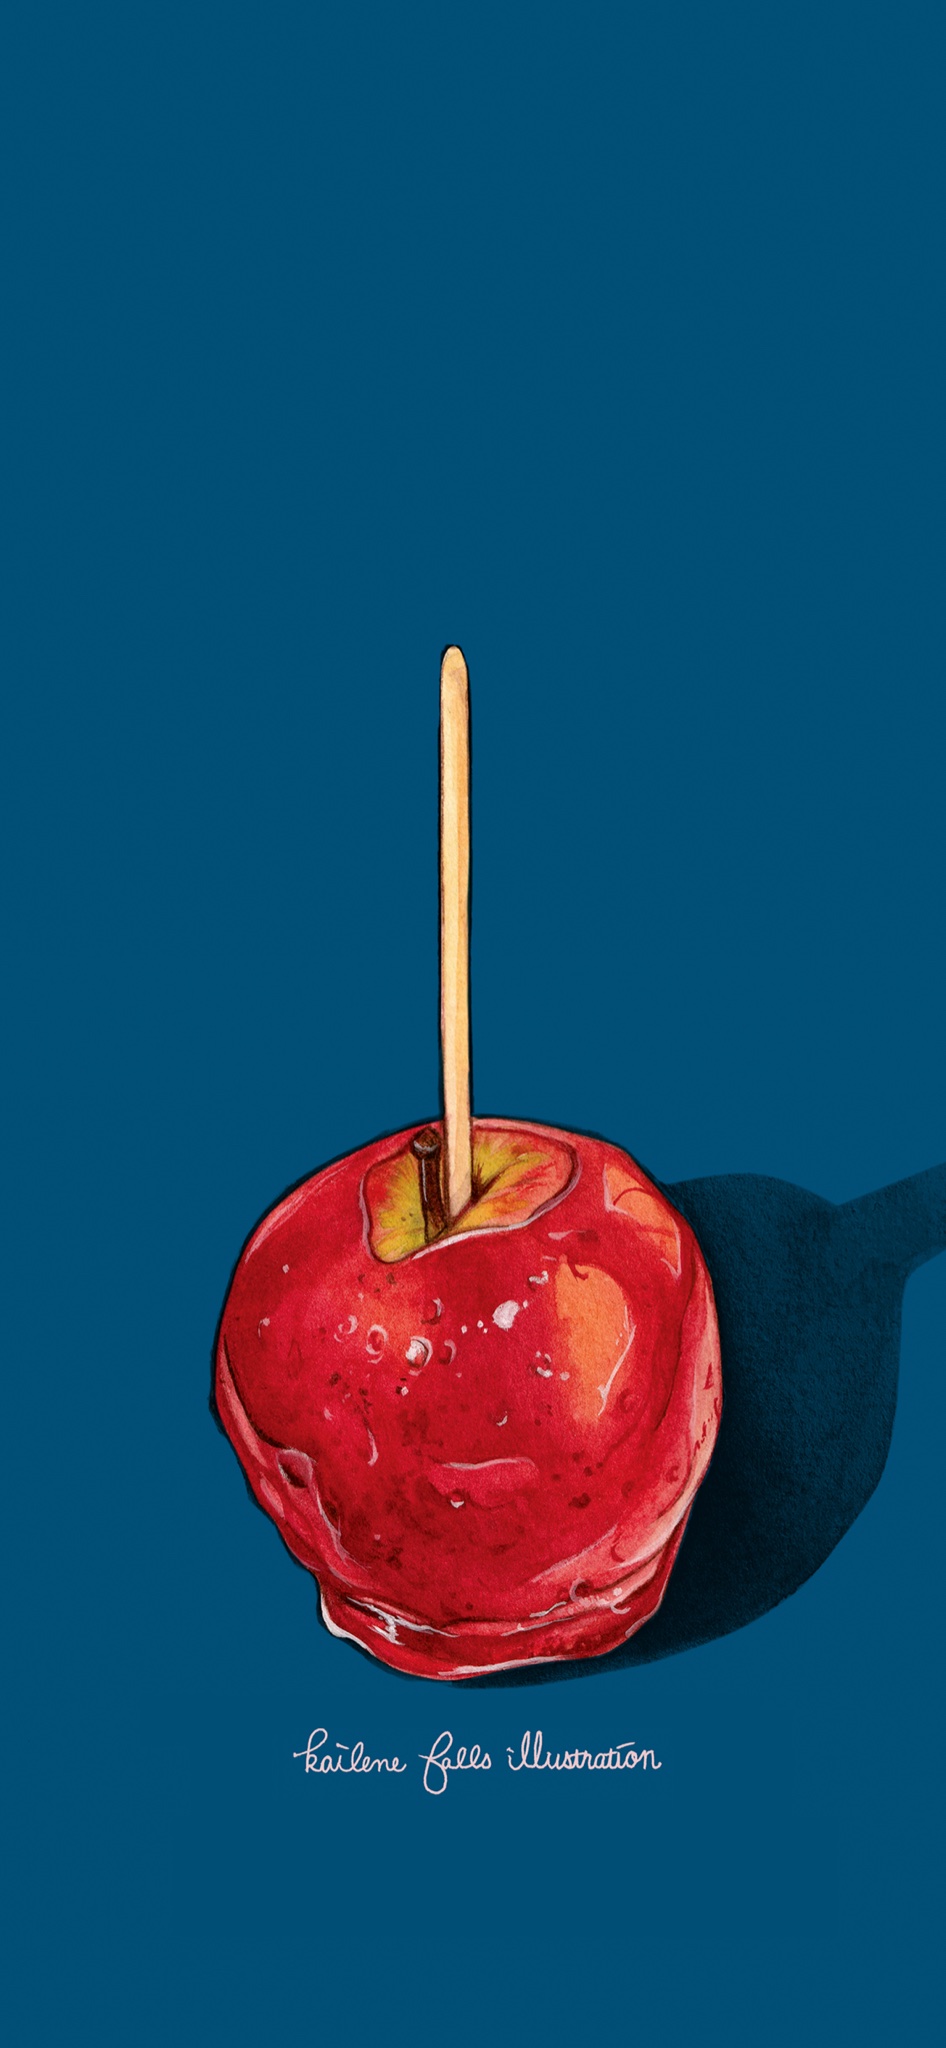 ケイリーン イラストをスマホ壁紙にしてみました ベトナムのバインミー とりんご飴です フードイラスト Foodillustration T Co Ofd39rlz0l Twitter